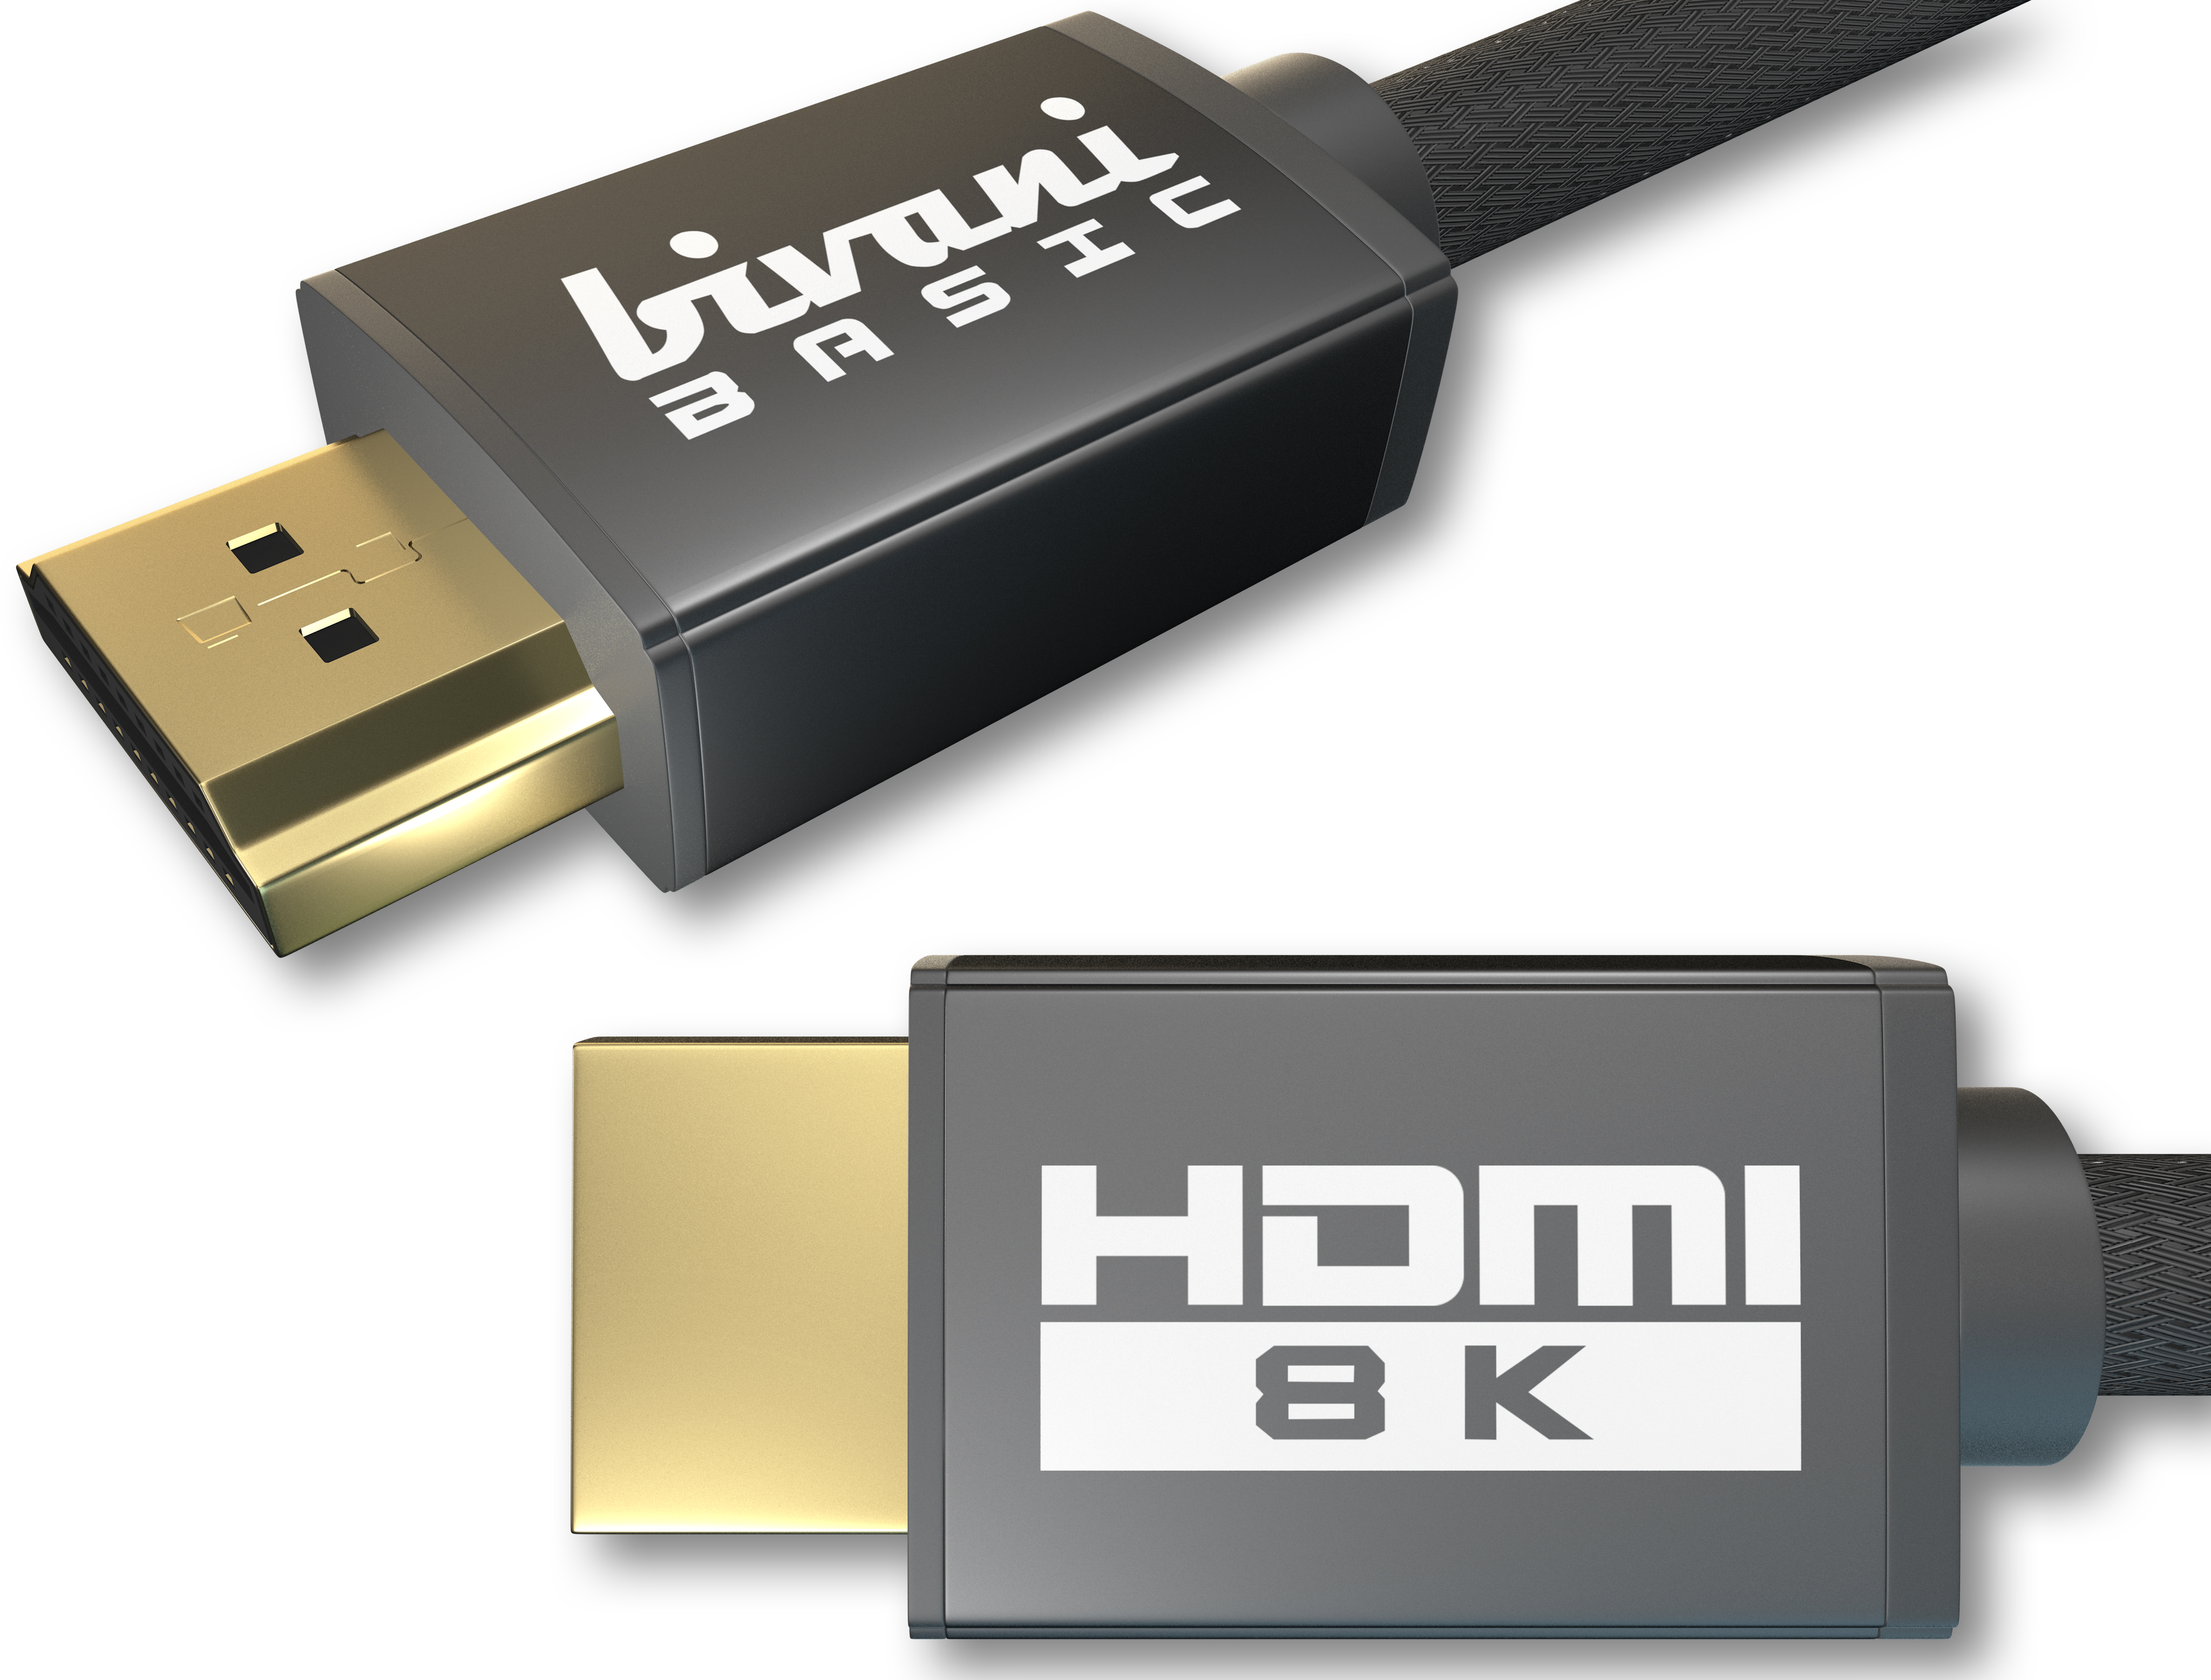 BIVANI 8K 48 Gbps - Kabel 8K Kabel Series 2.1a HDMI Basic 2.1a